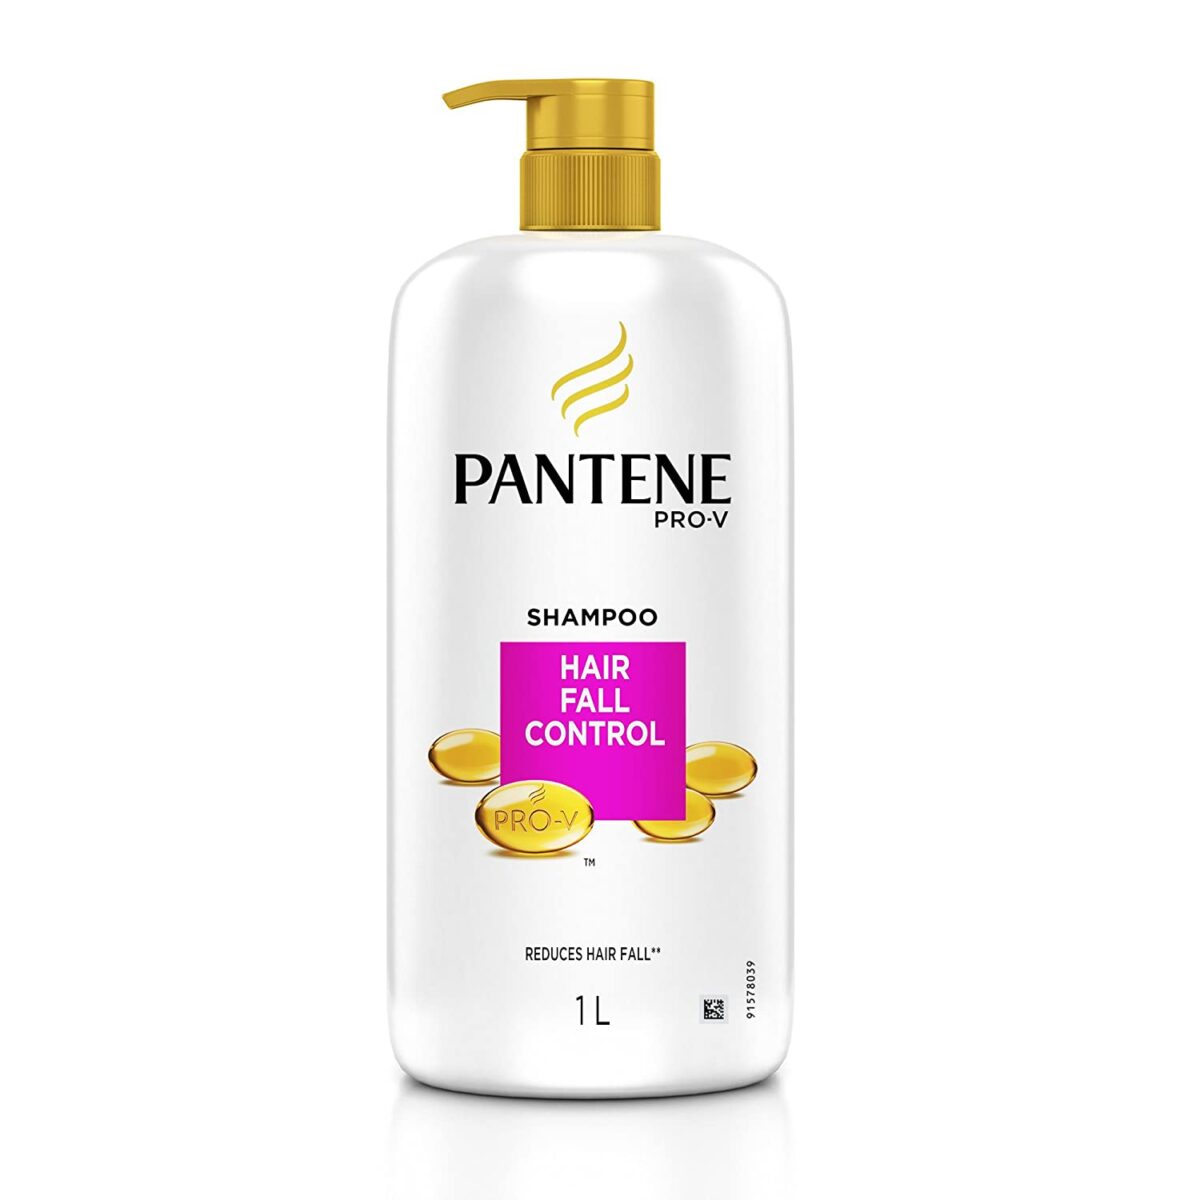 Pantene Pro v Shampoo Hair